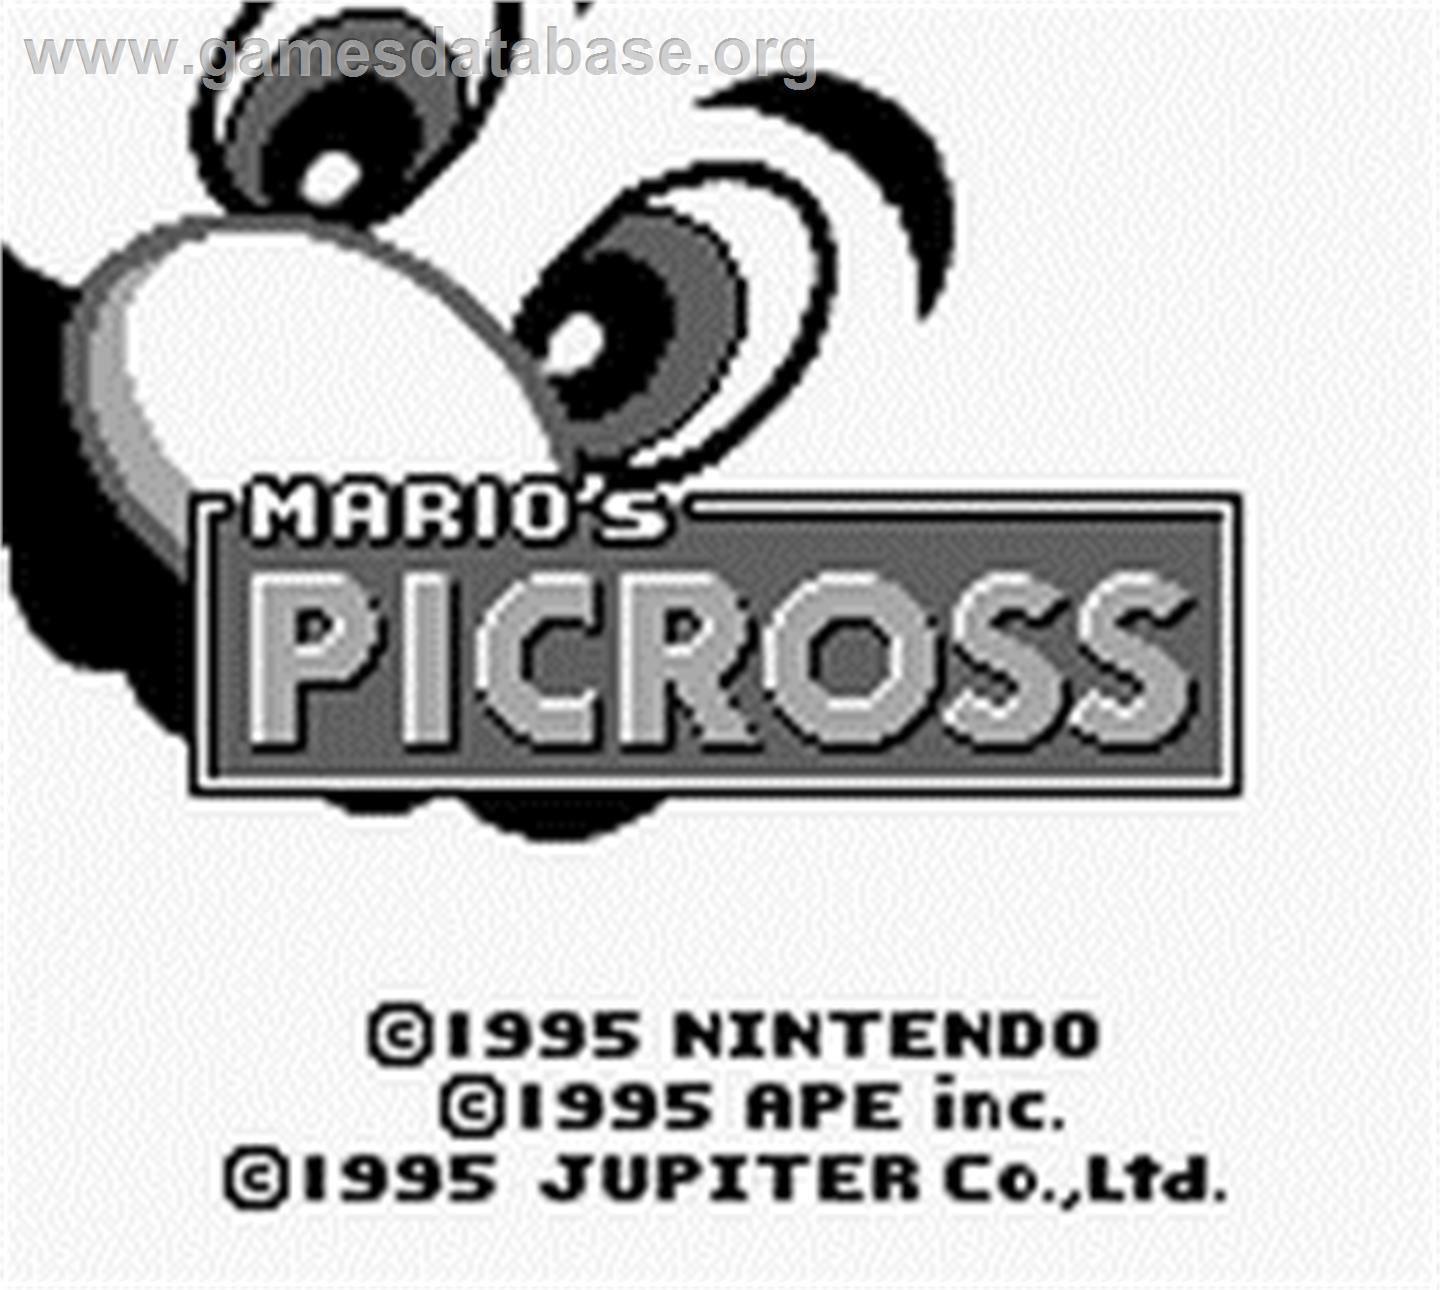 Mario's Picross - Nintendo Game Boy - Artwork - Title Screen